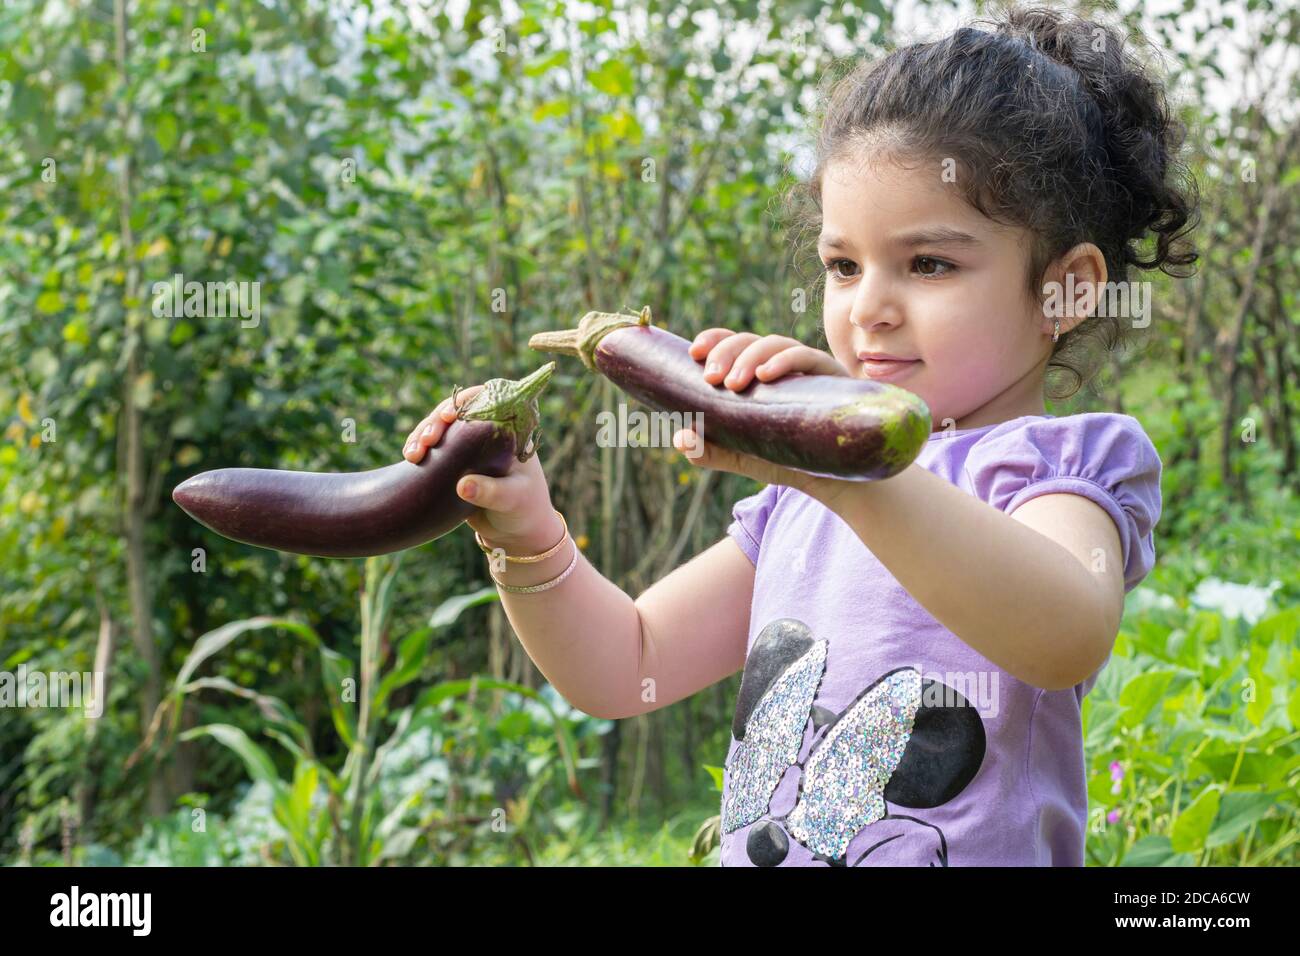 Portrait eines kleinen Mädchens, das mit zwei frischen Auberginen spielt, die aus dem Garten gepflückt wurden, gesundes Lifestyle-Konzept Stockfoto